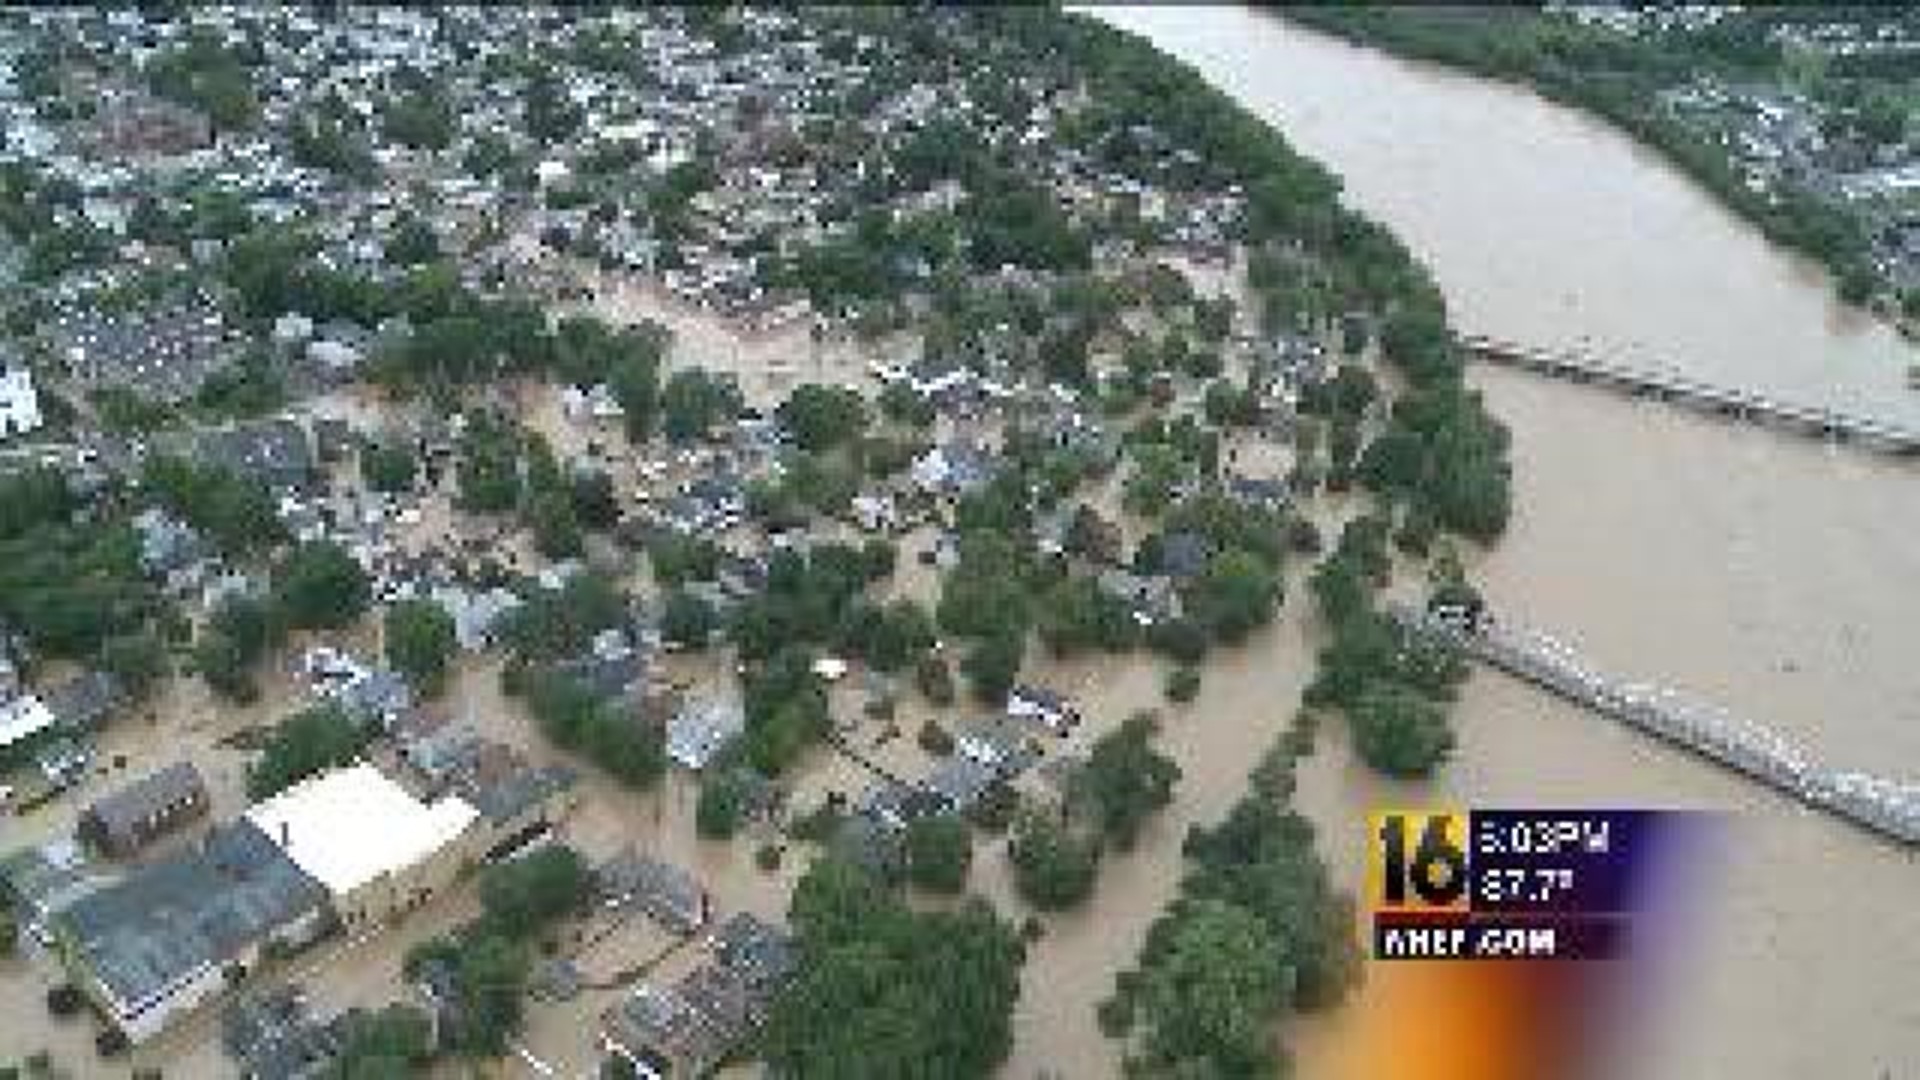 FEMA: West Pittston Violated Flood Regulations